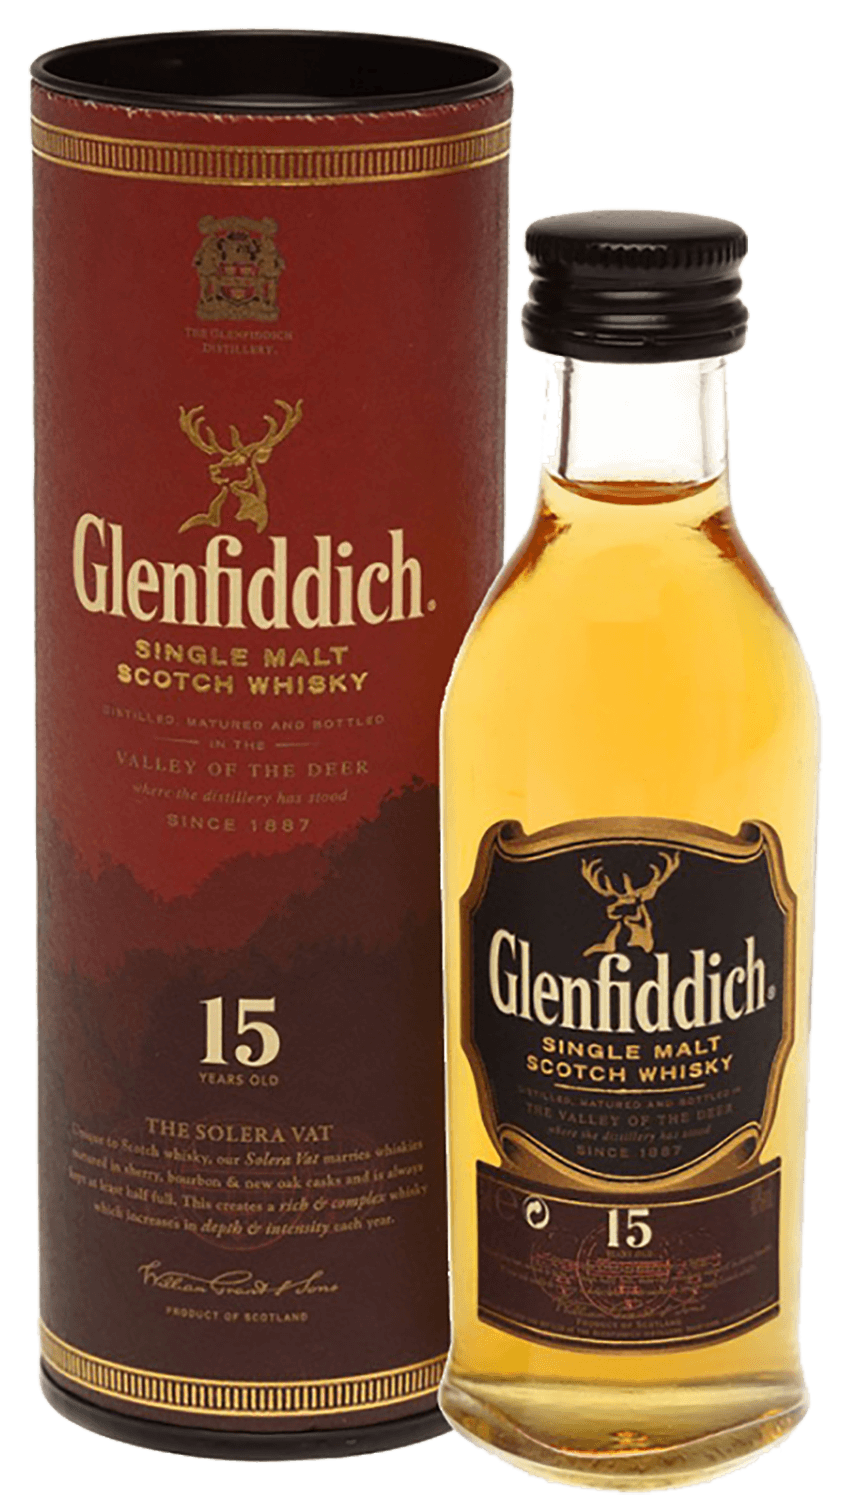 Glenfiddich Single Malt Scotch Whisky 15 y.o. (gift box)